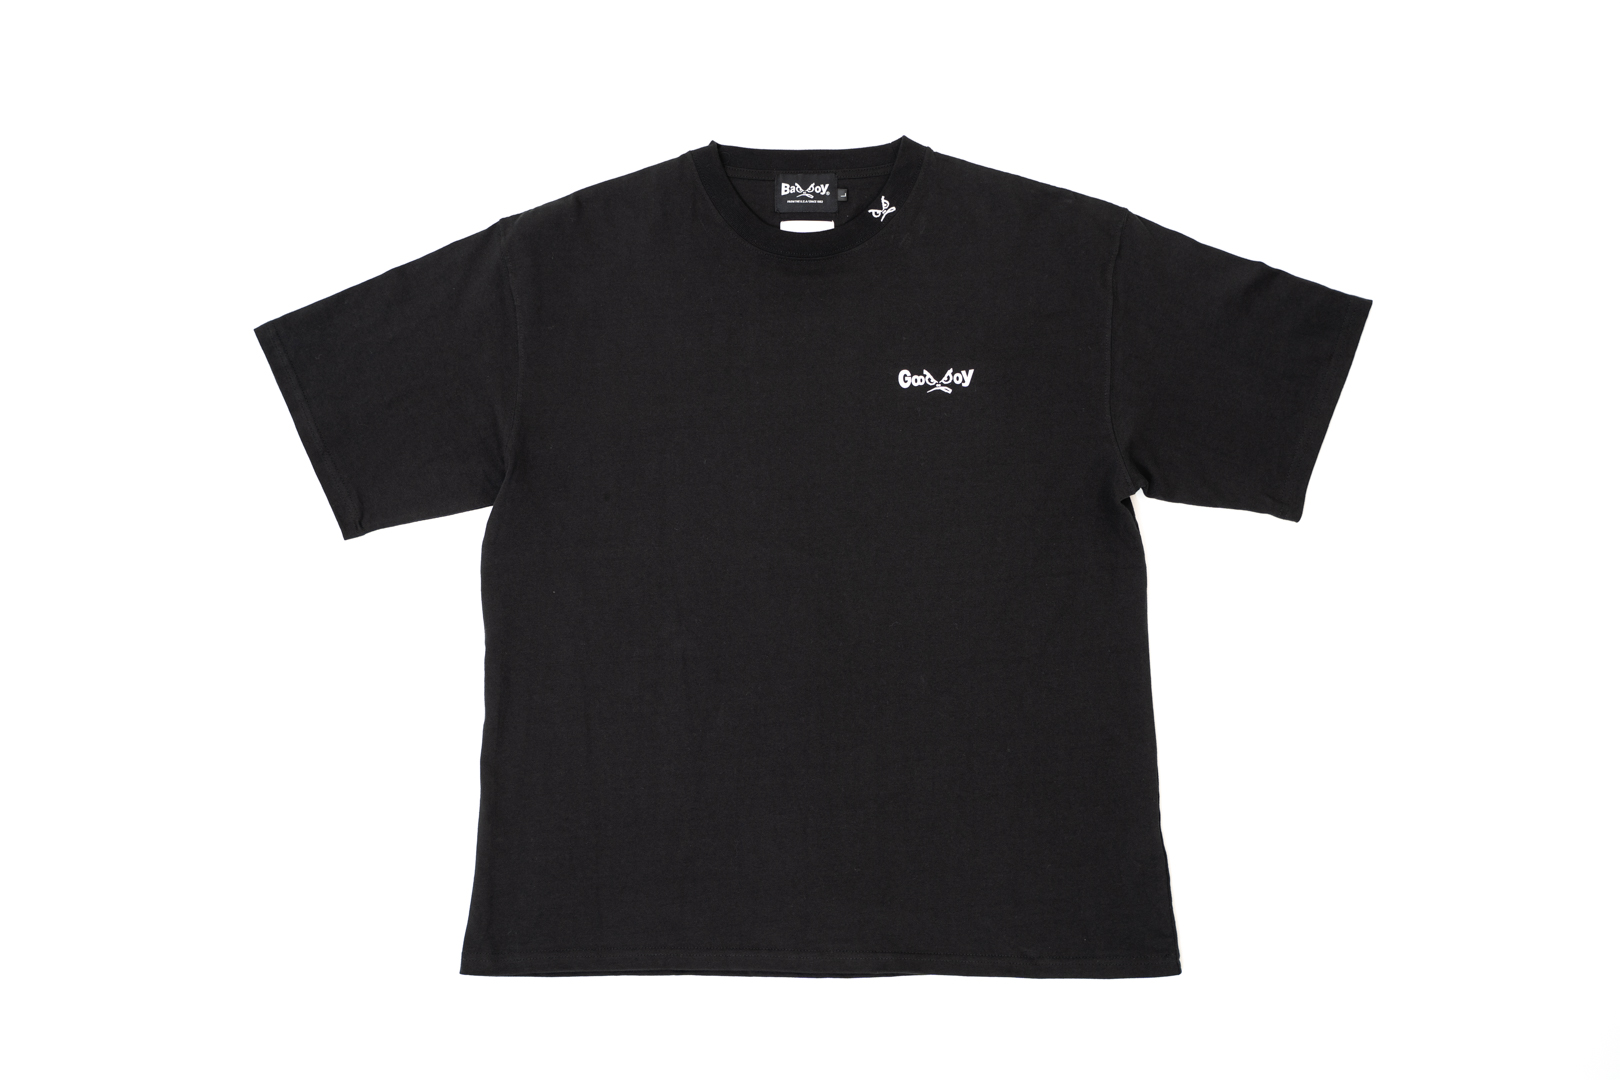 Danとbad Boyのコラボレーションライン Good Boy Tシャツとスイムショーツの2型を発売 株式会社danのプレスリリース